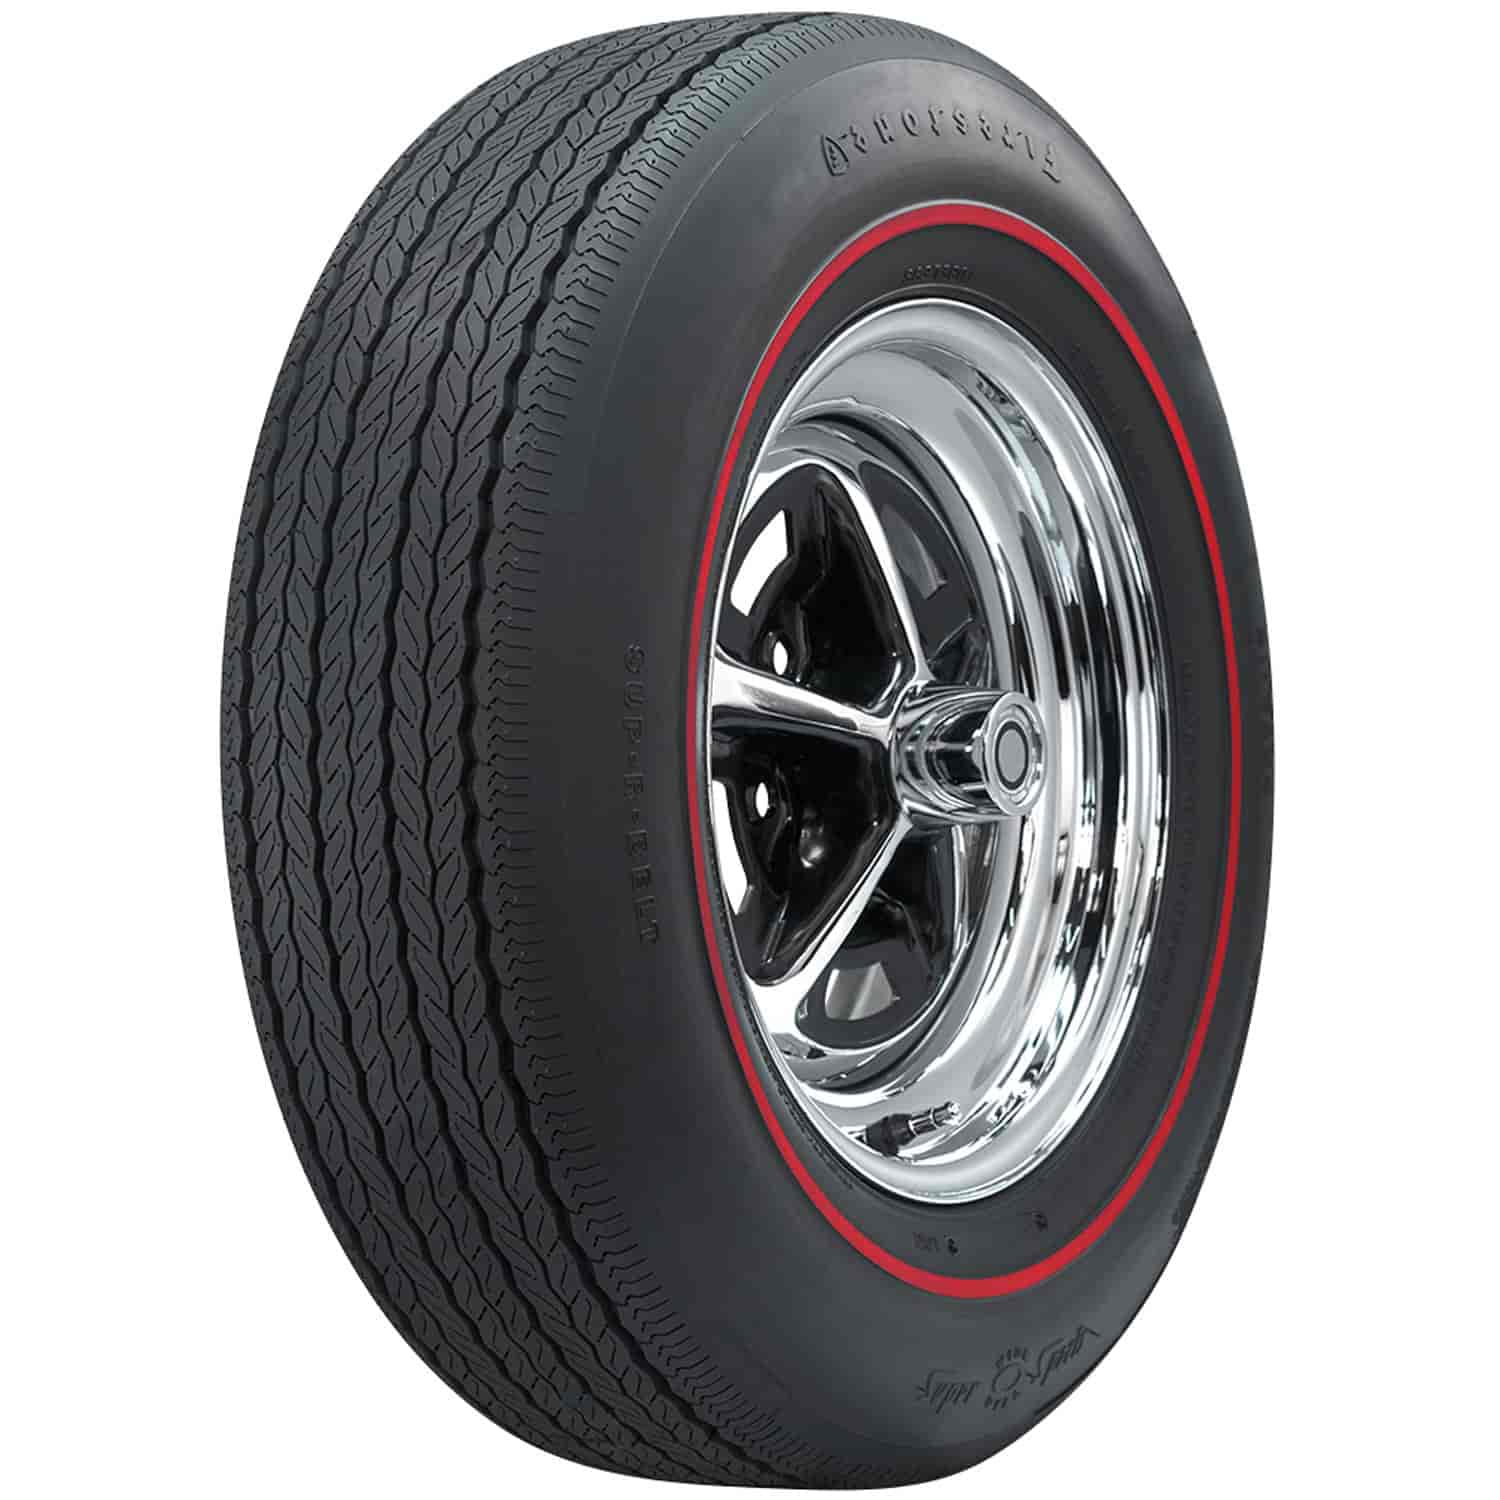 Firestone Wide Oval Radial Tire GR70-15